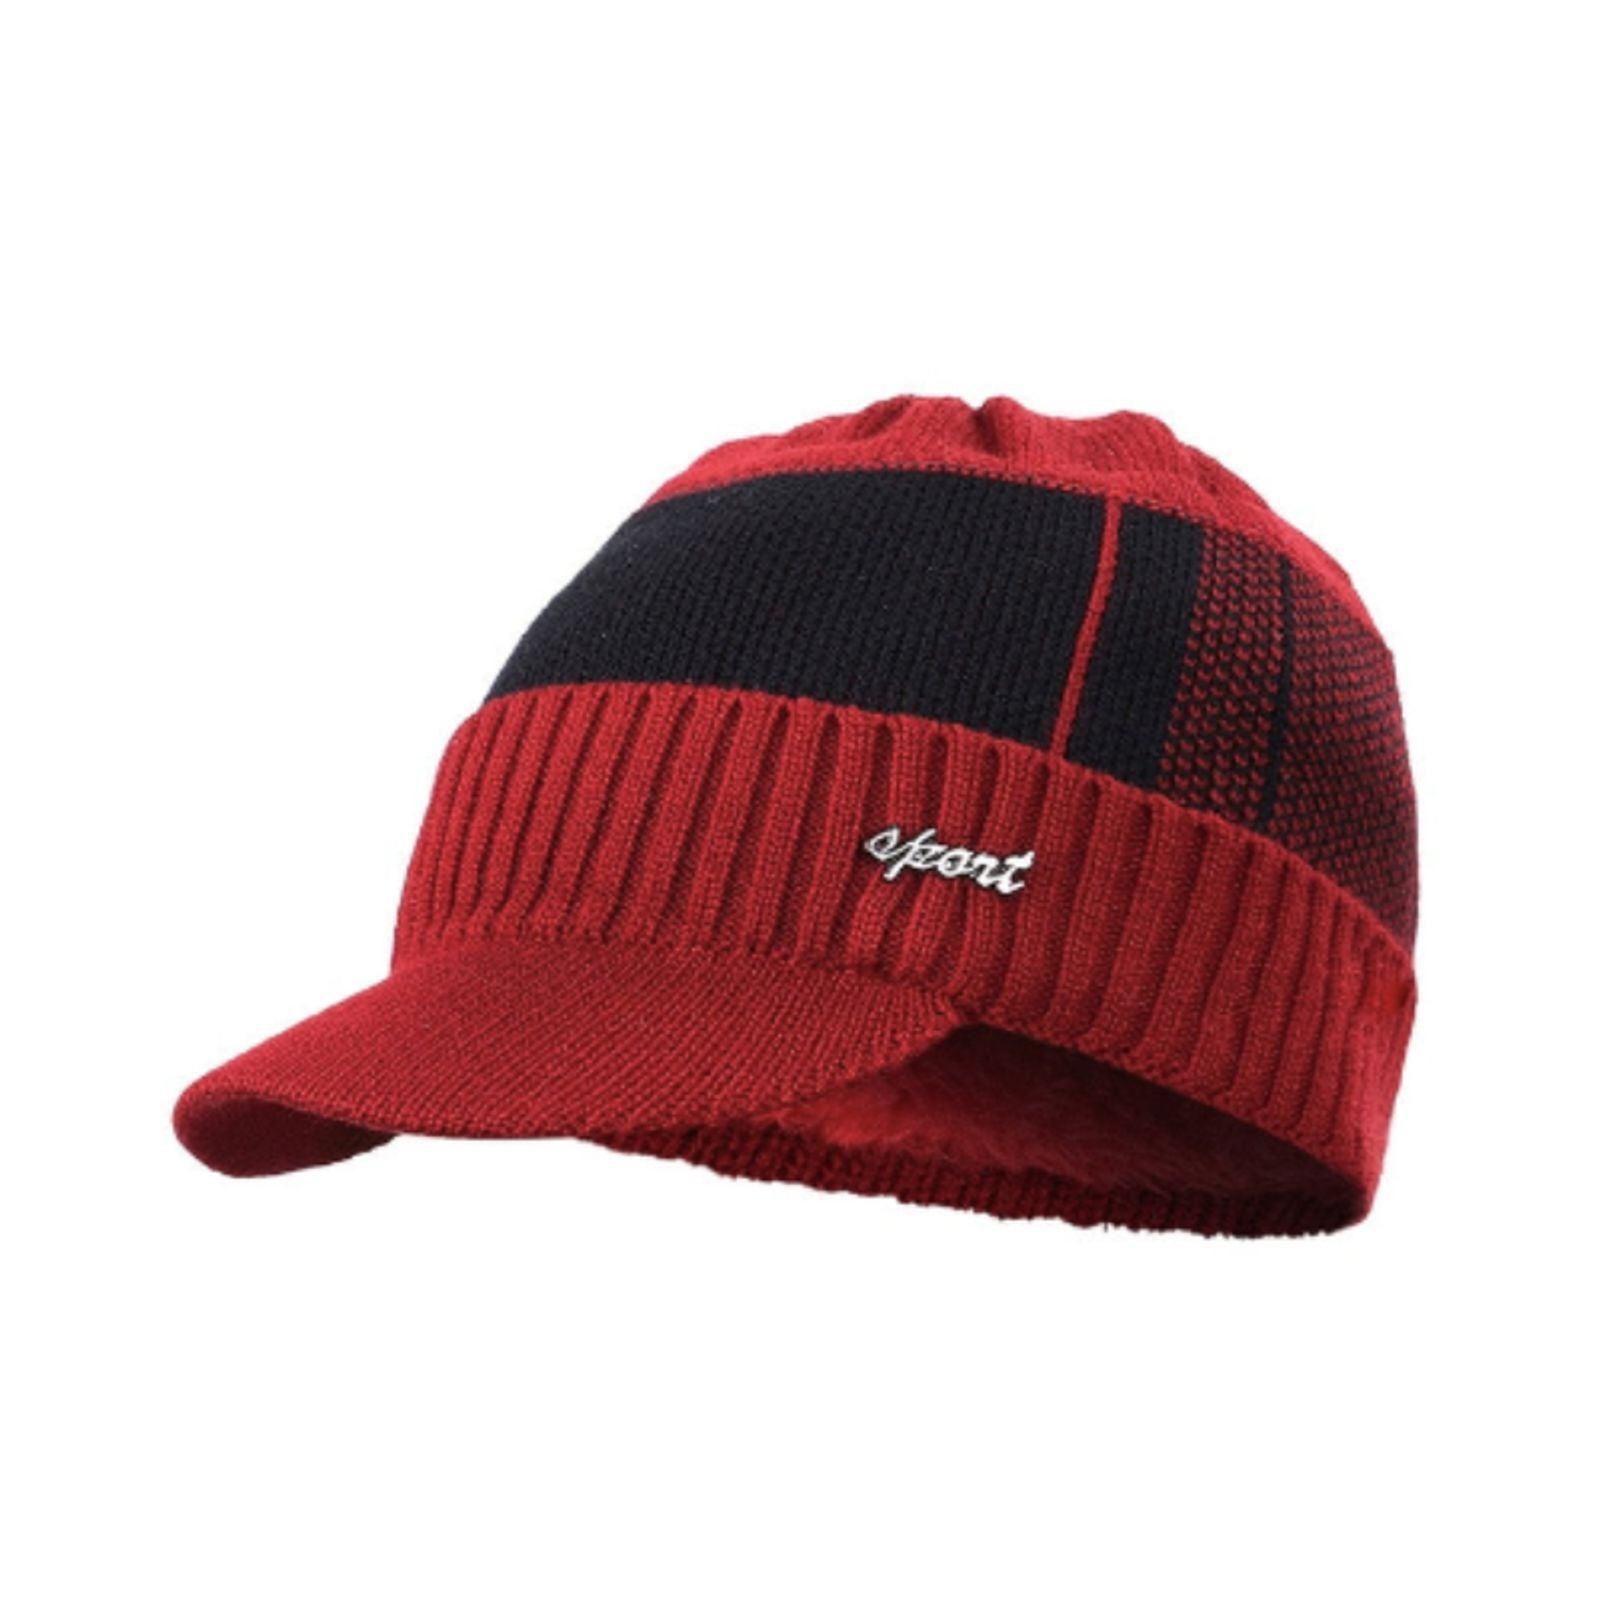 Bonnet visière sport Atlanta en mélange de laine, coton et doublure chaude en polyester pour homme - coloris rouge et noir